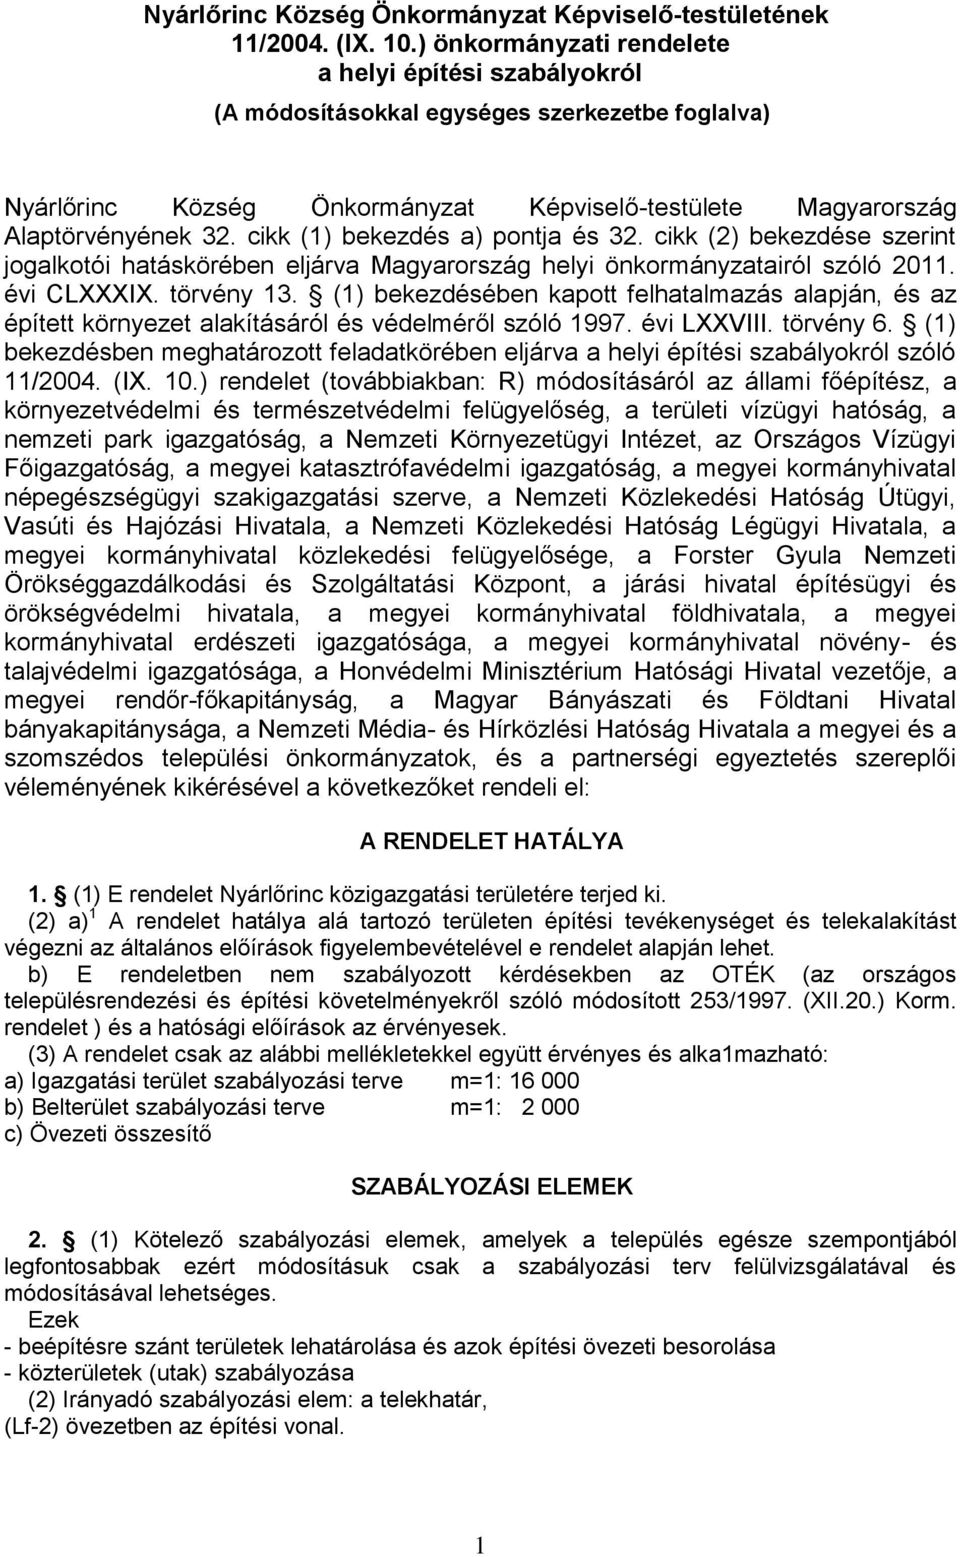 cikk (1) bekezdés a) pontja és 32. cikk (2) bekezdése szerint jogalkotói hatáskörében eljárva Magyarország helyi önkormányzatairól szóló 2011. évi CLXXXIX. törvény 13.